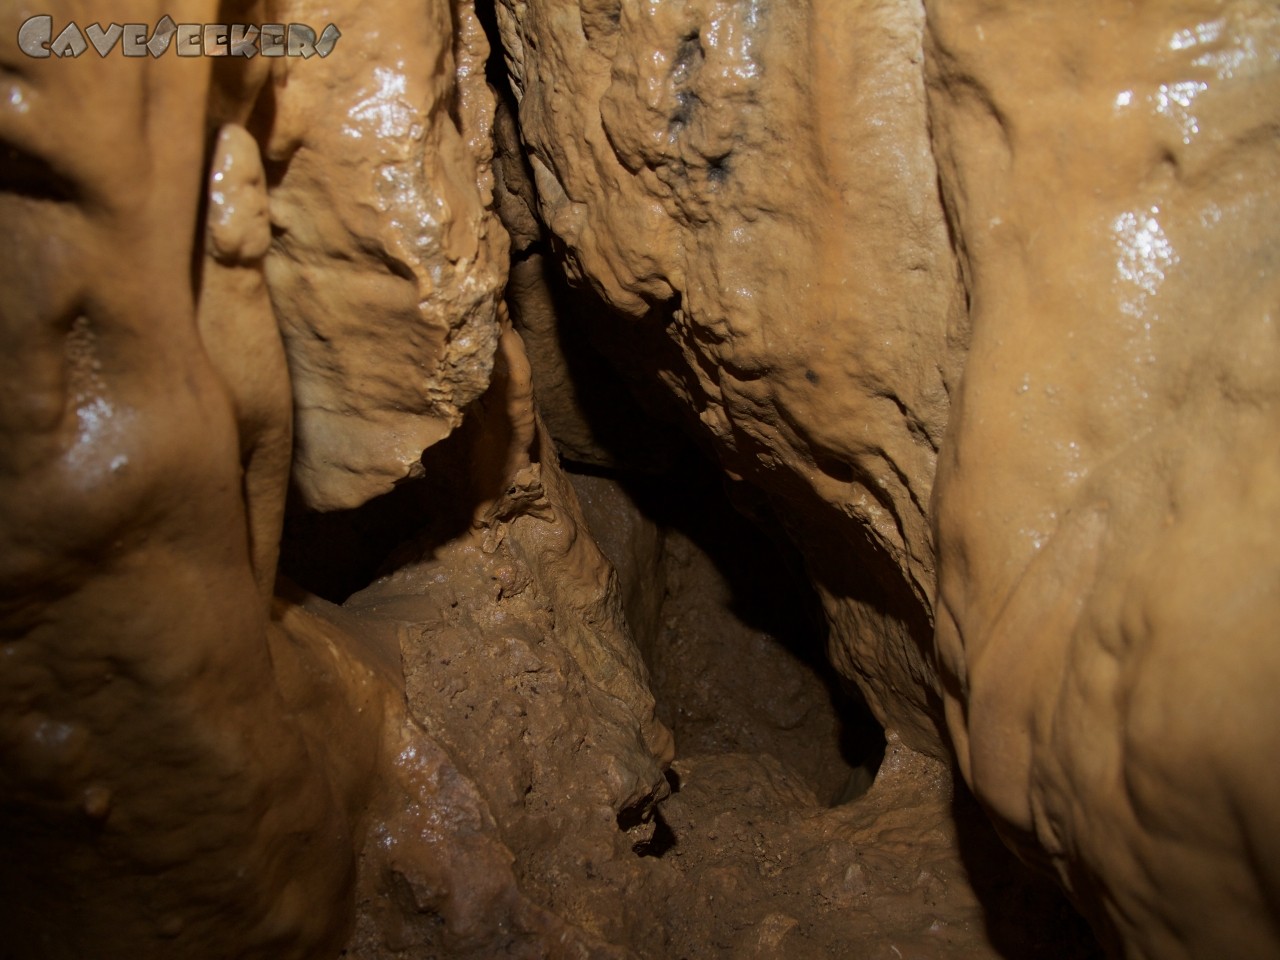 Pourpevelle: Hier verbringt der CaveSeeker viele Minuten beim Versuch sich durch dieses Loch zu drücken. Was aber natürlich nicht klappen kann.